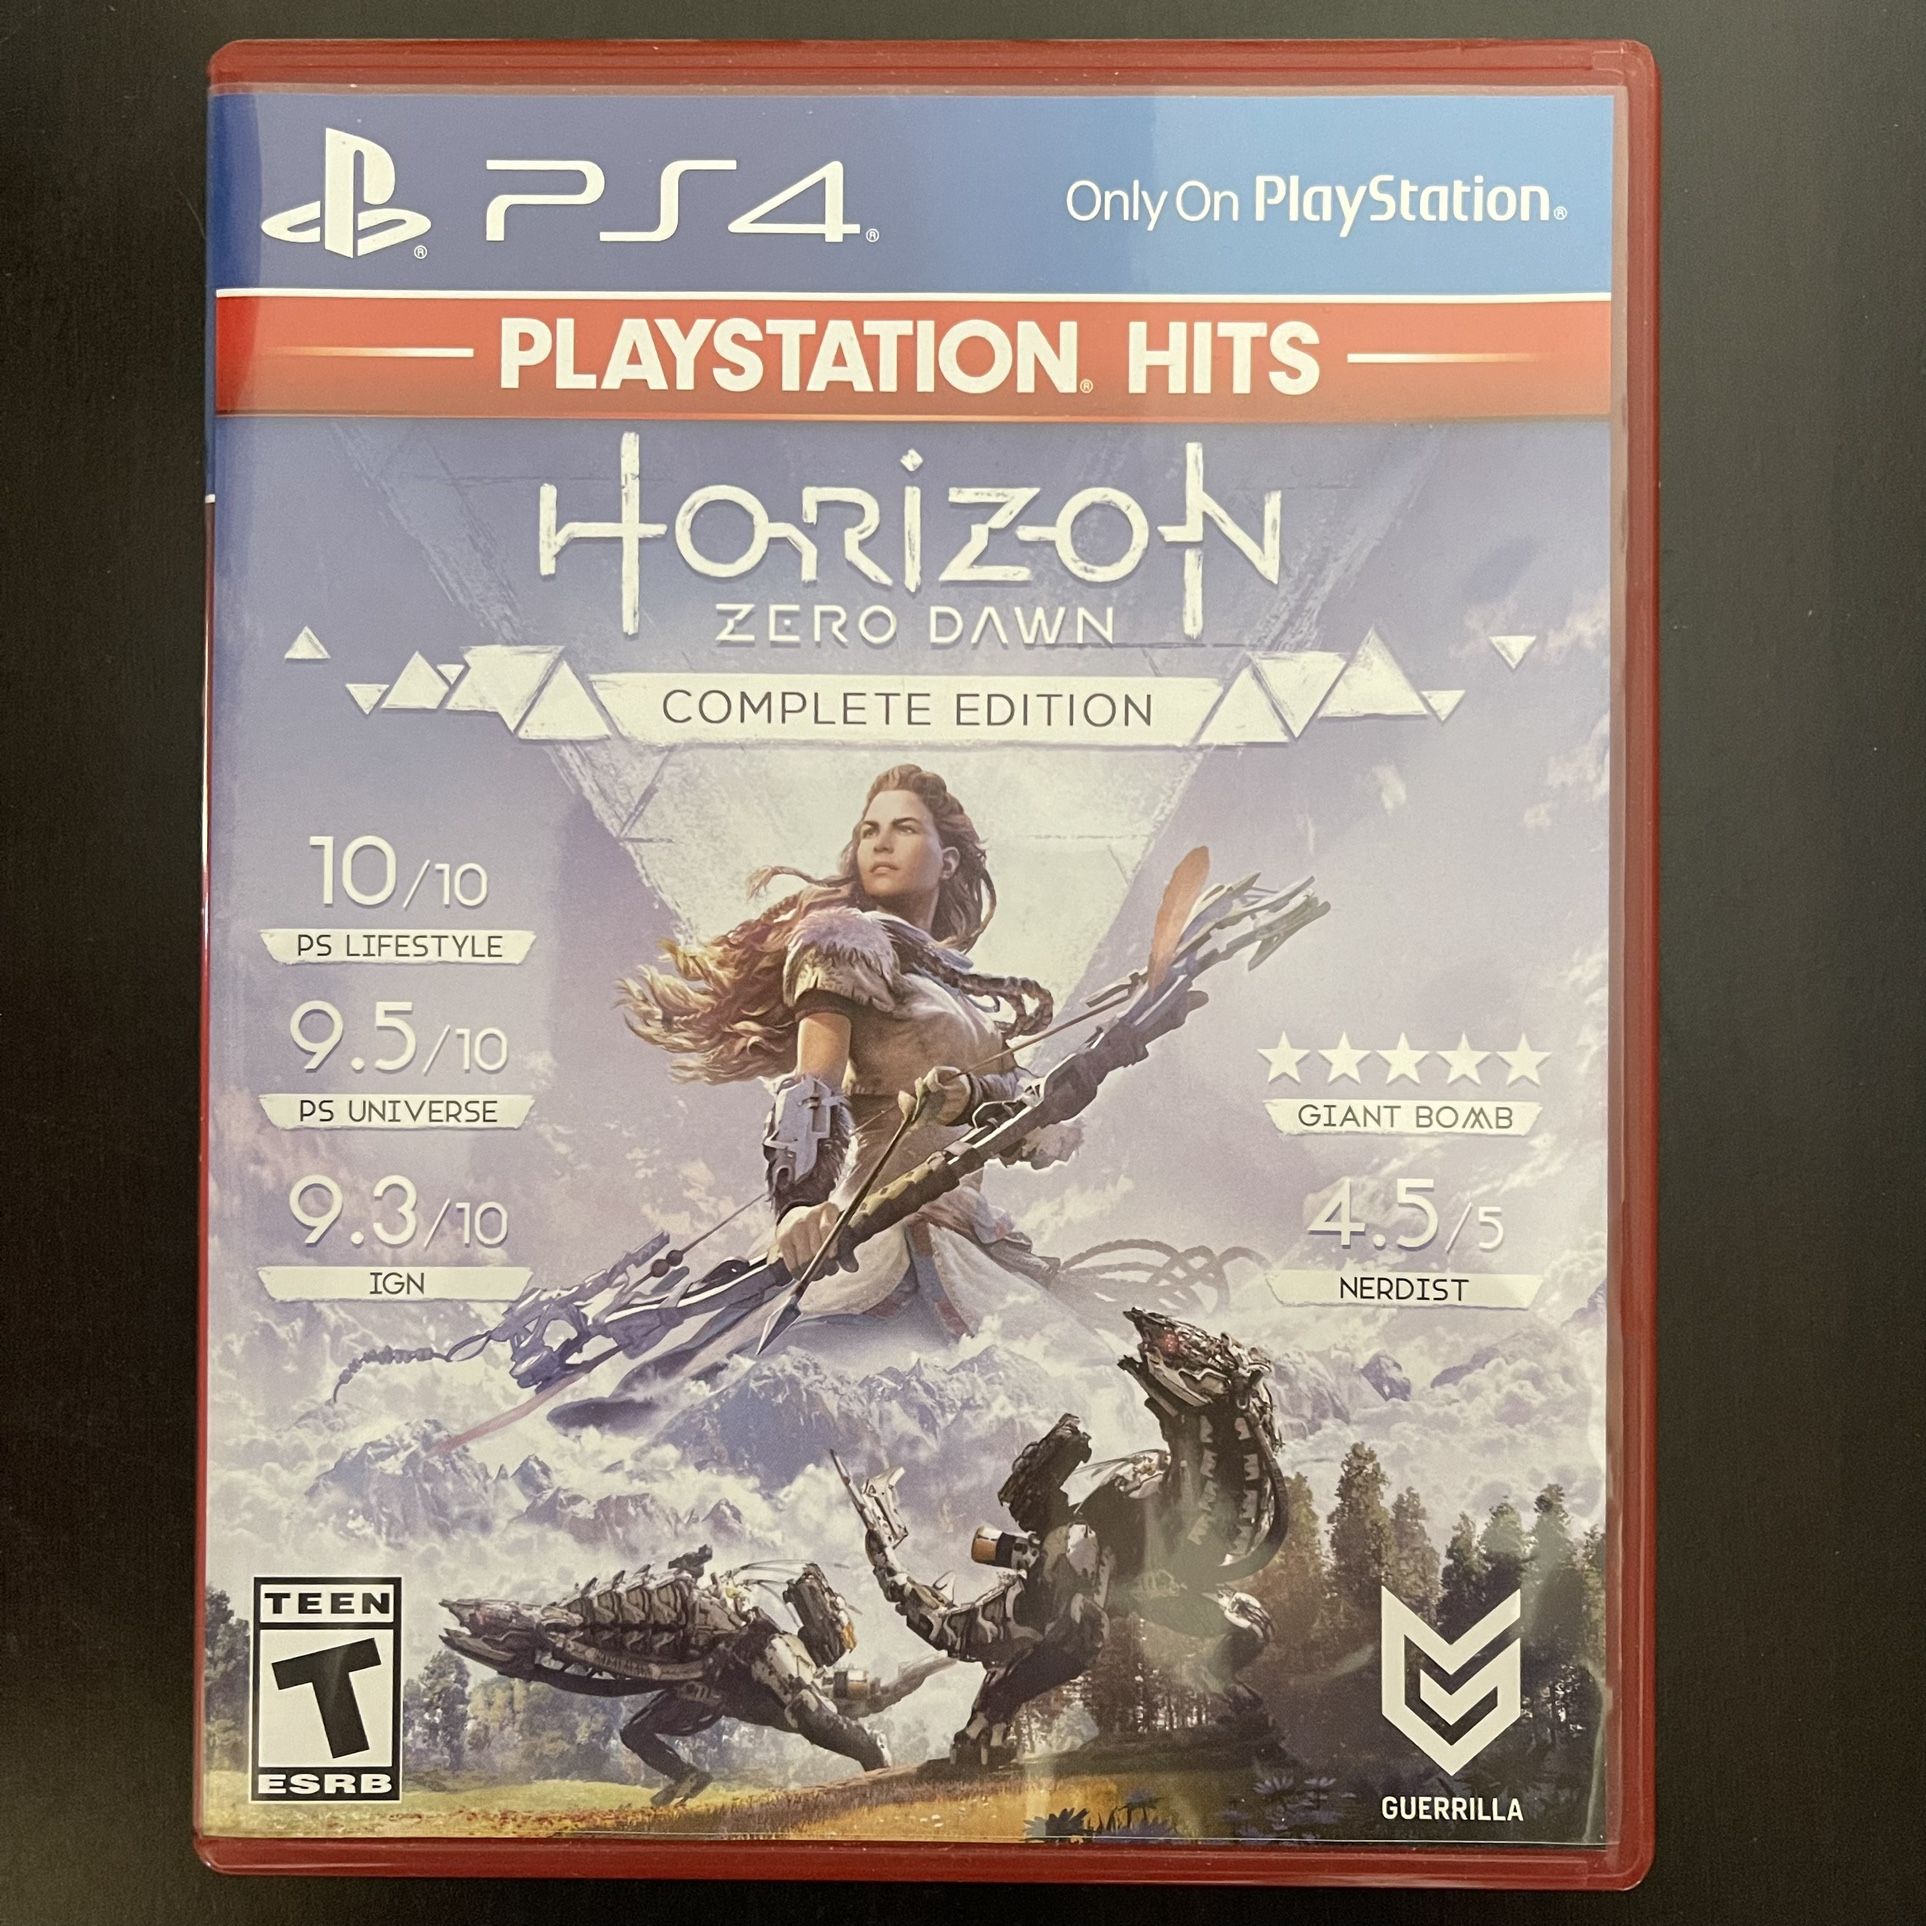 Horizon: Zero Dawn - PS4 - New (opened)